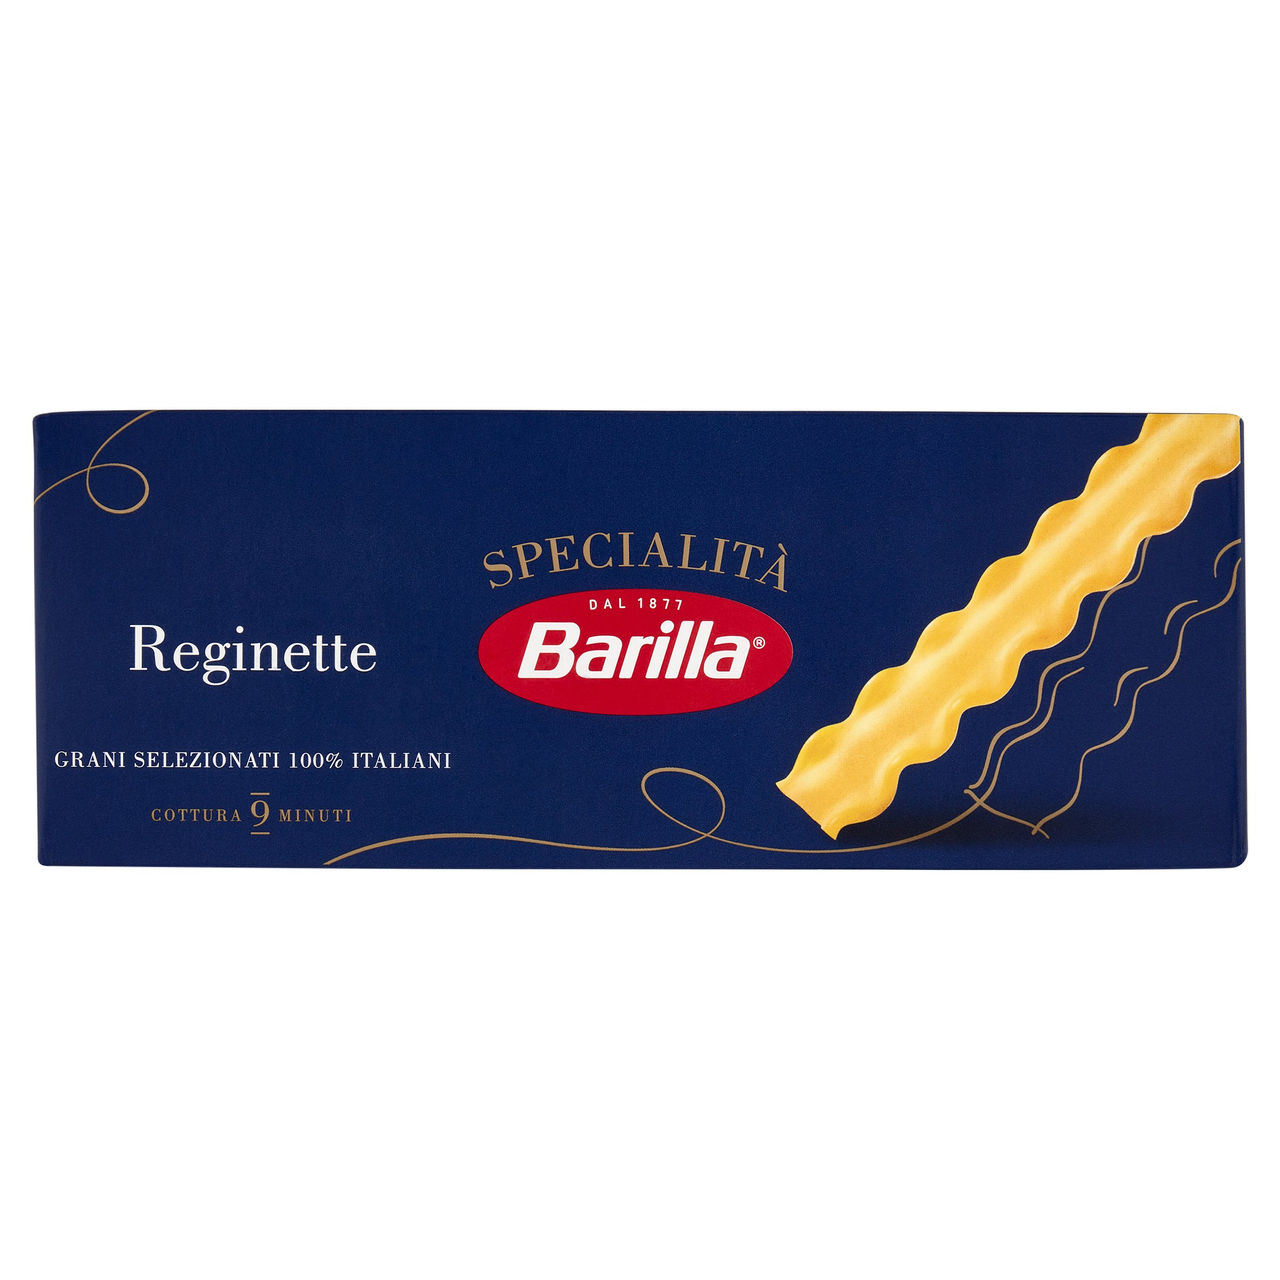 Barilla Specialità Reginette 500 g